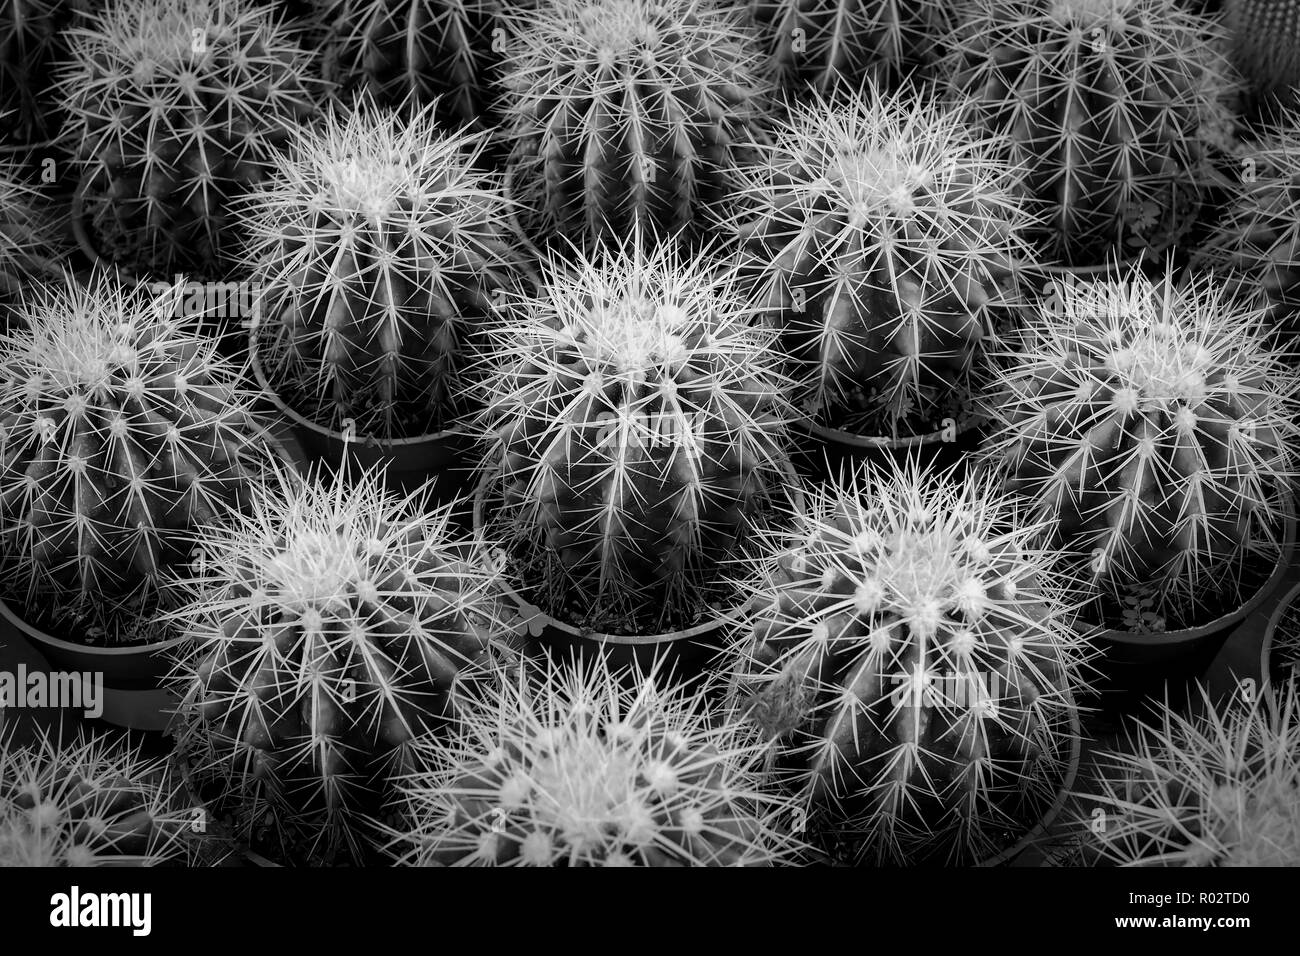 Cactus de fondo en blanco y negro. Foto de stock